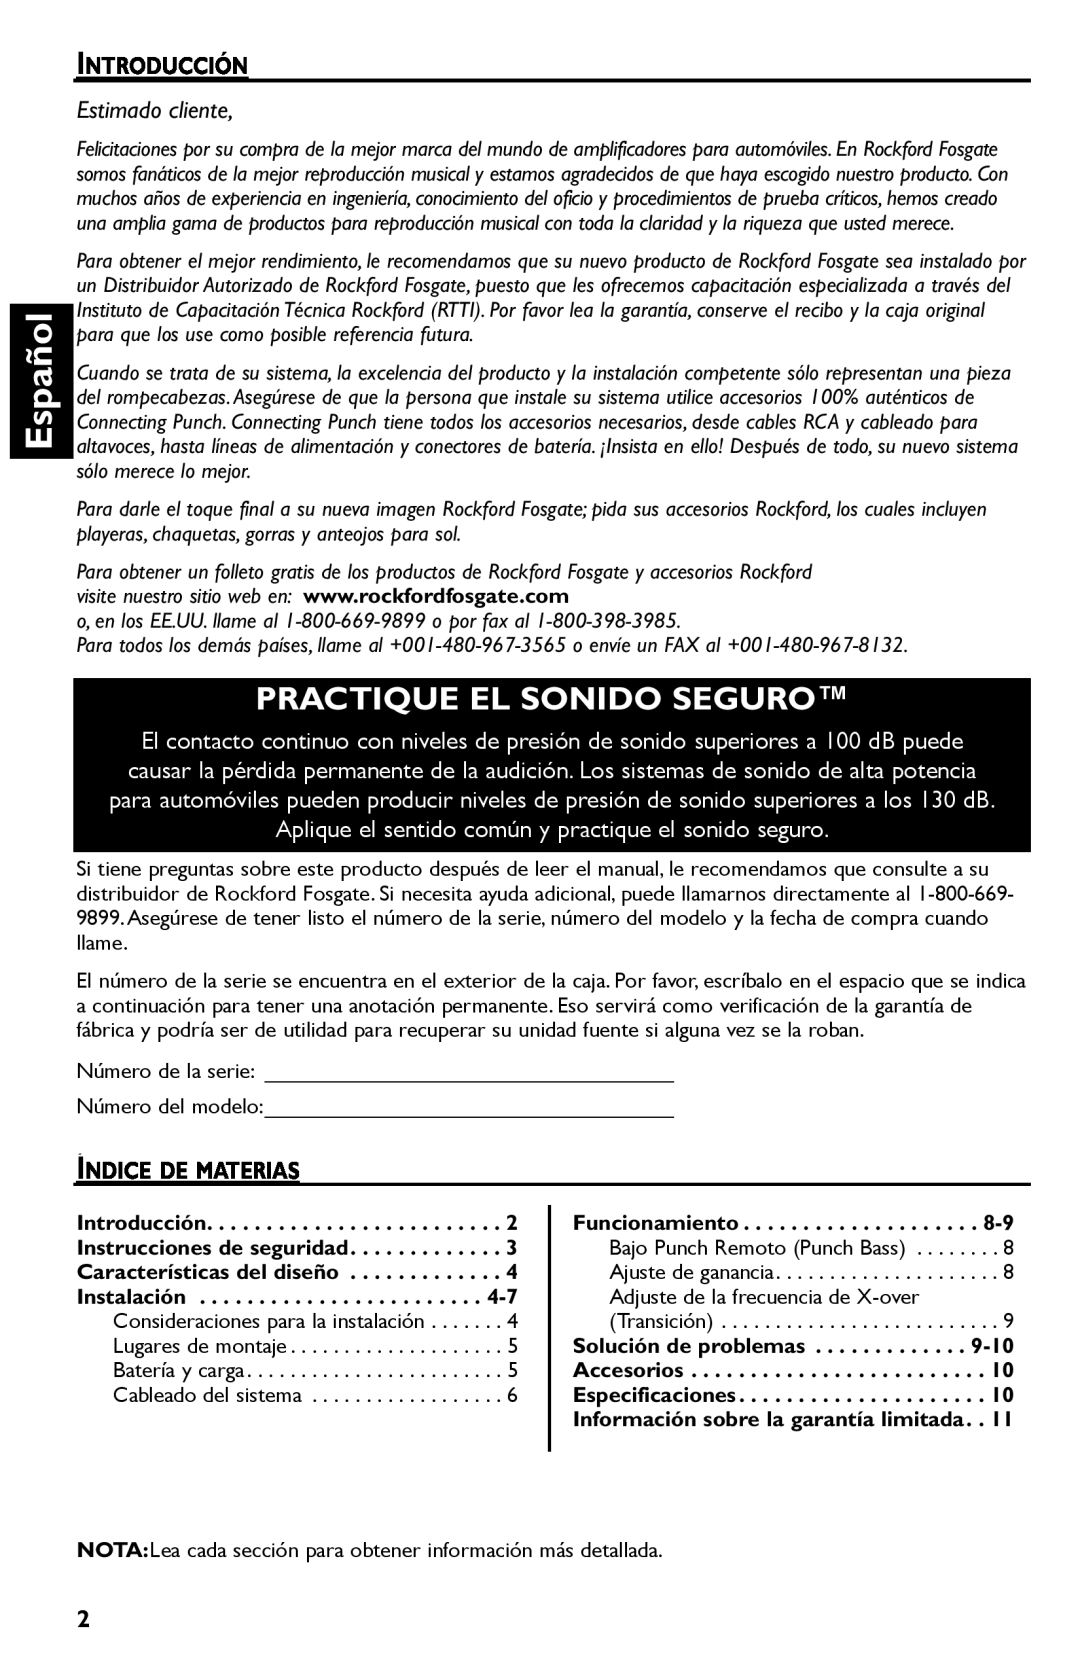 Rockford Fosgate Punch 45 manual Español, Practique El Sonido Seguro, Estimado cliente 